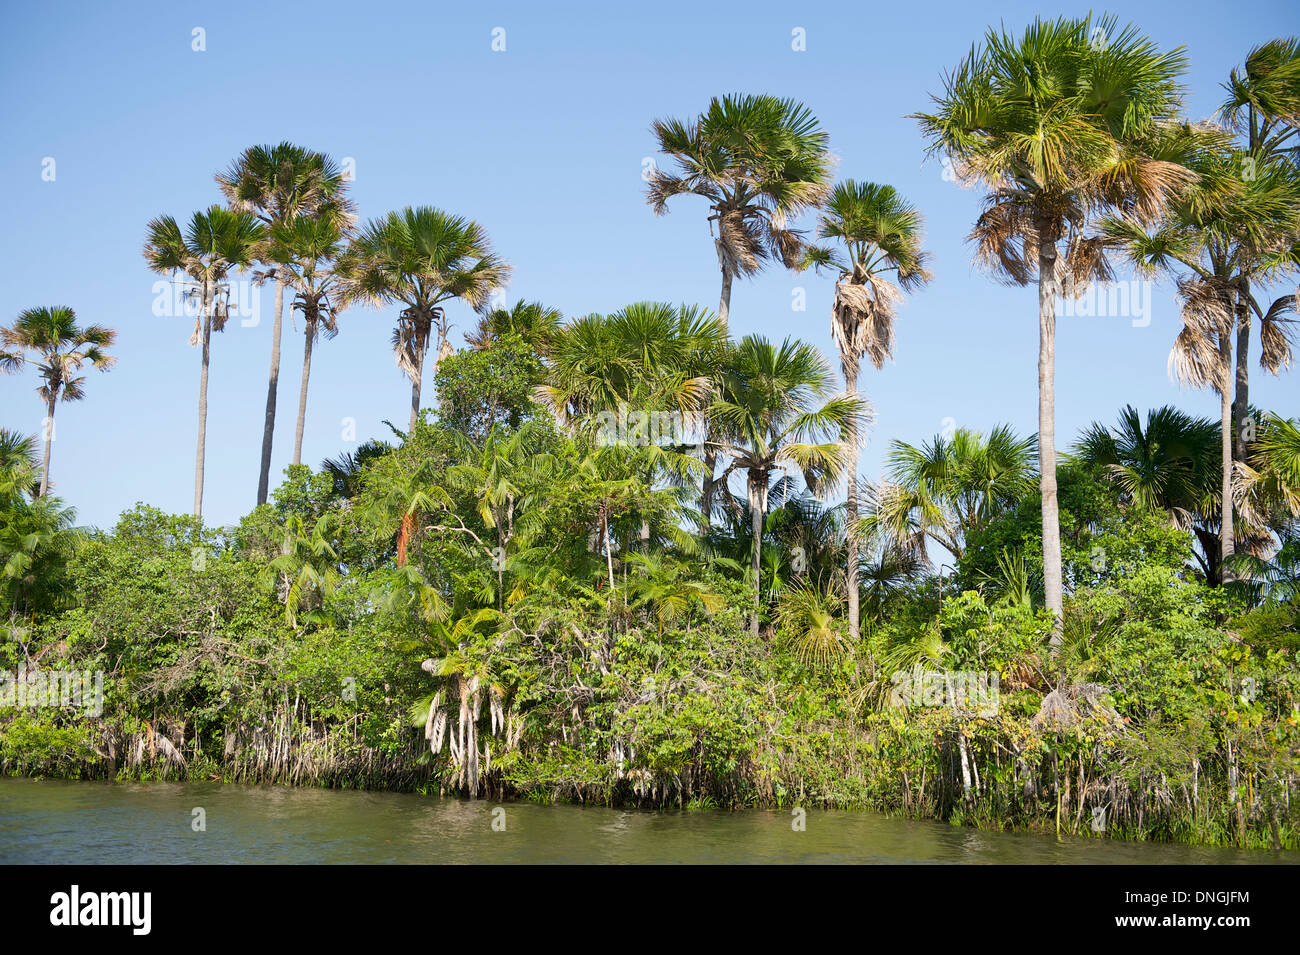 Abgelegenen brasilianischen Fluss gesäumt von tropischen Palmen Baum Dschungel Rio Preguicas (Preguiças) in Brasilien Nordeste Stockfoto